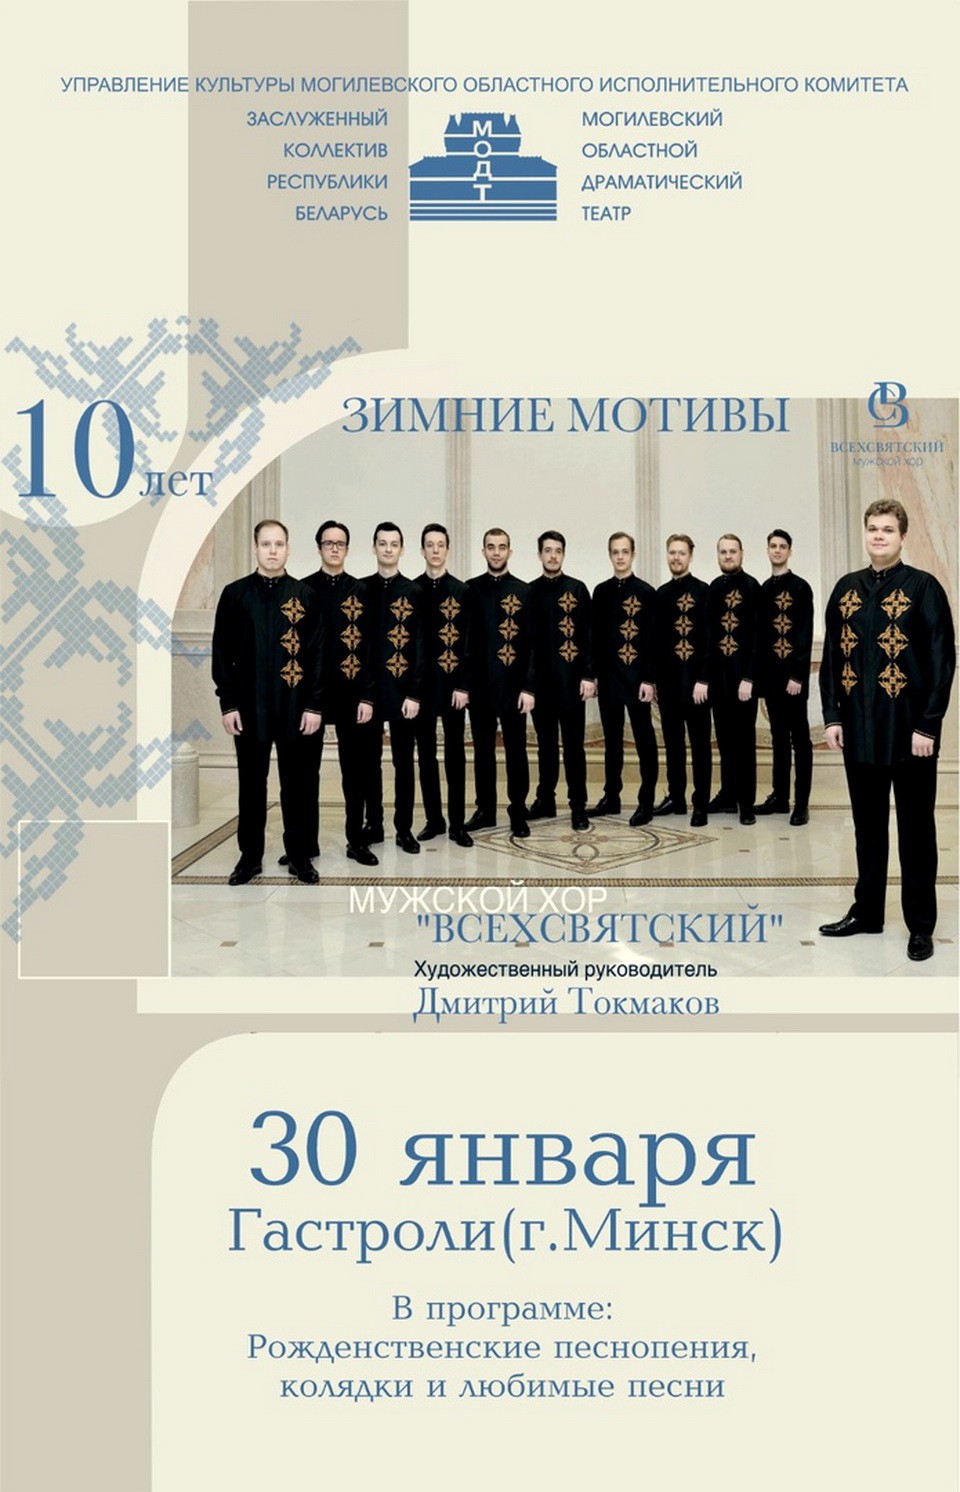 Мужской хор «Всехсвятский» выступит в Могилеве 30 января